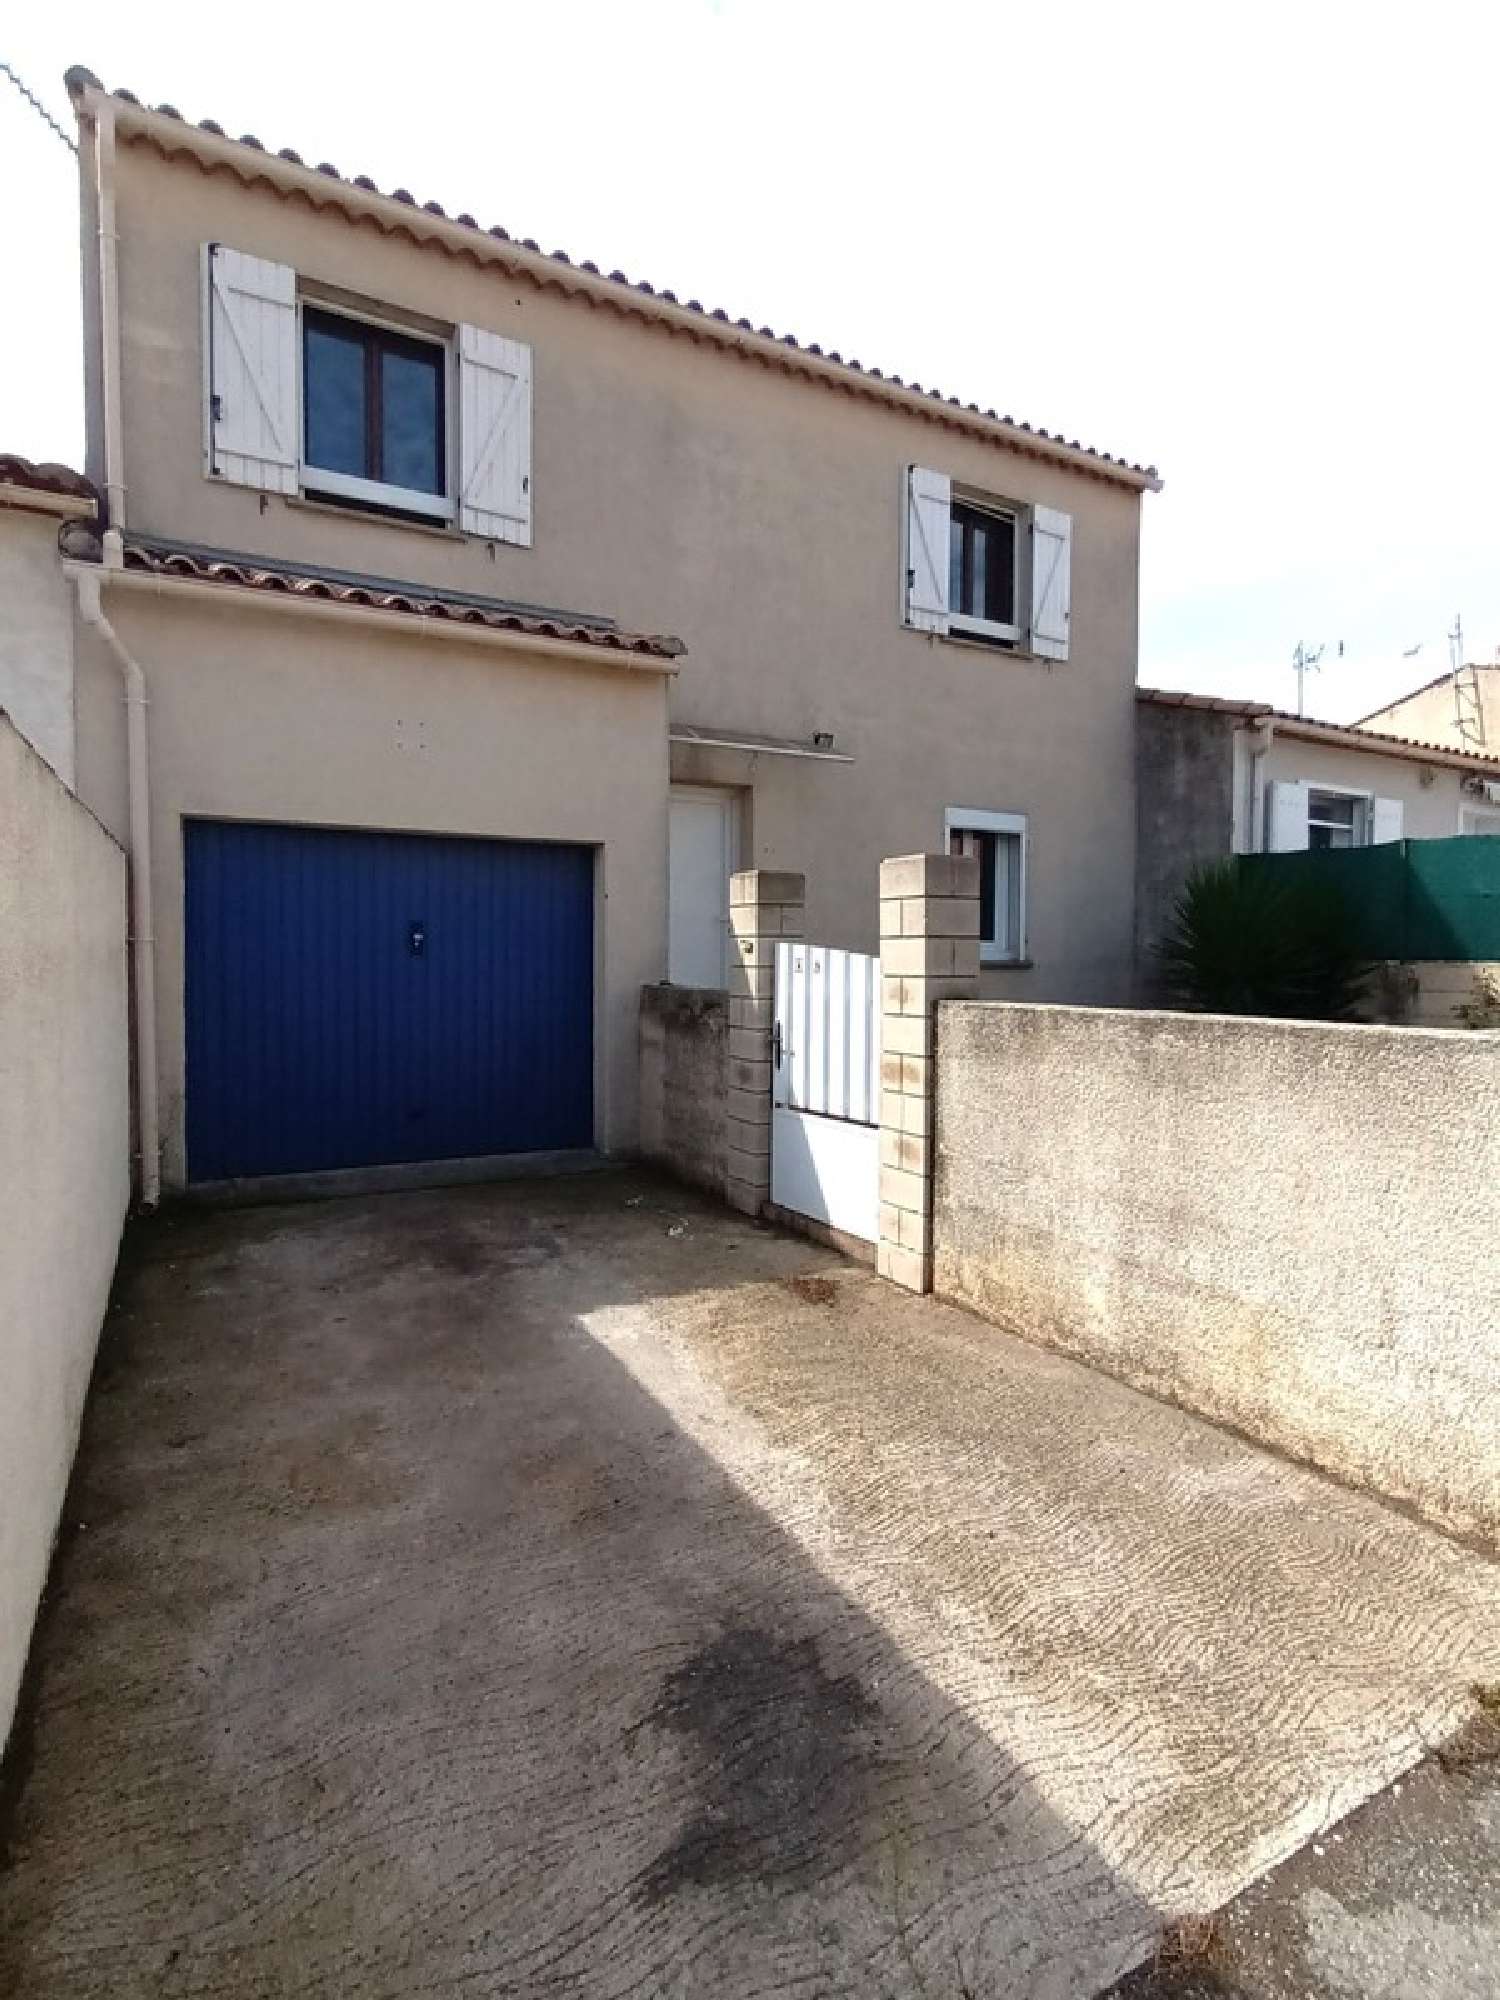  à vendre maison Frontignan Hérault 4